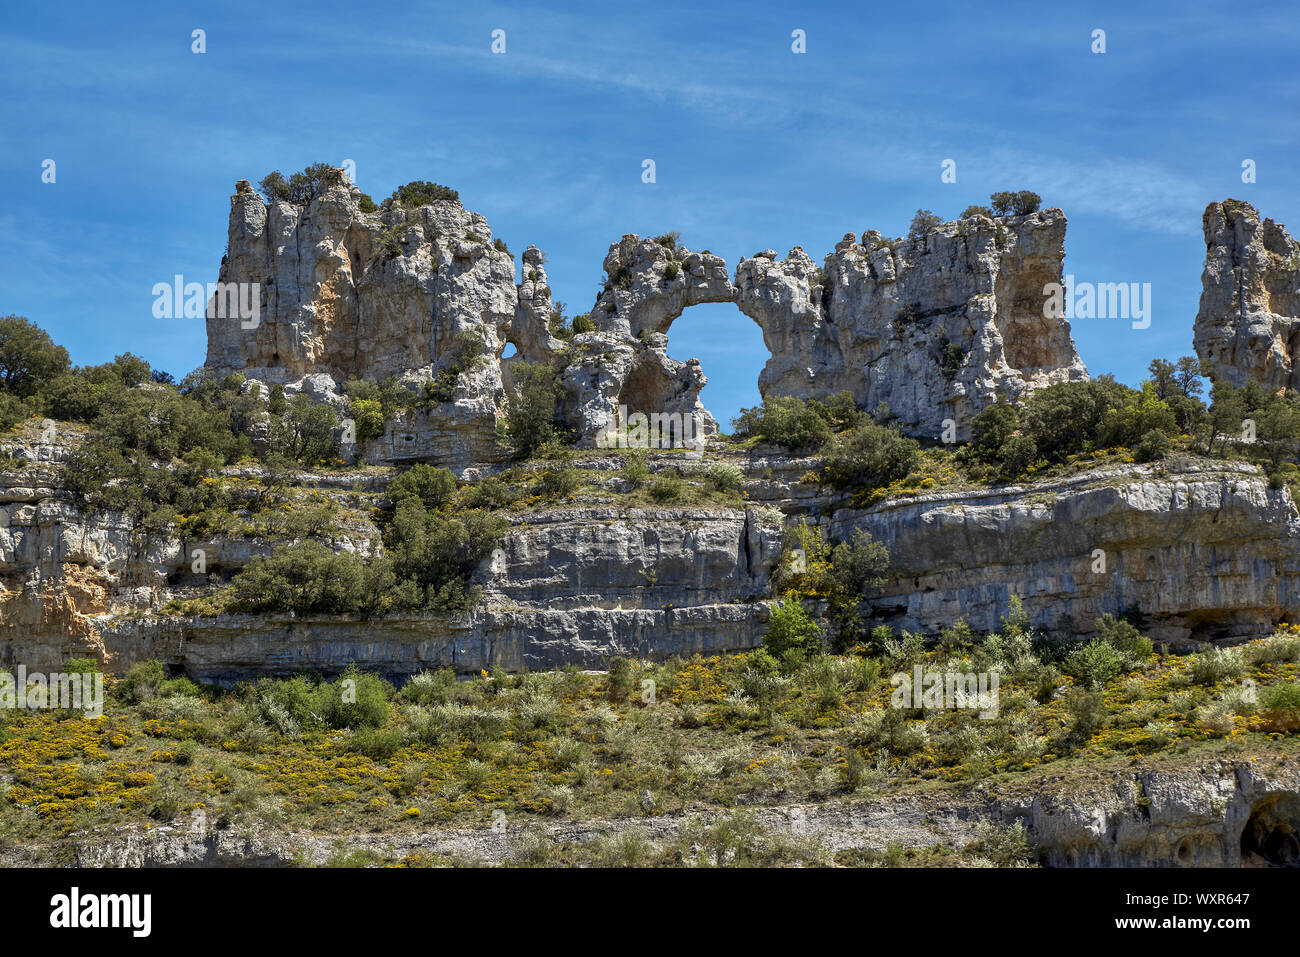 Rock formations in Orbaneja del Castillo, connu sous le nom de Kiss les chameaux, forme la carte de l'Afrique, Parc Naturel de la partie supérieure de l'Ebre, Castille-León. Espagne Banque D'Images